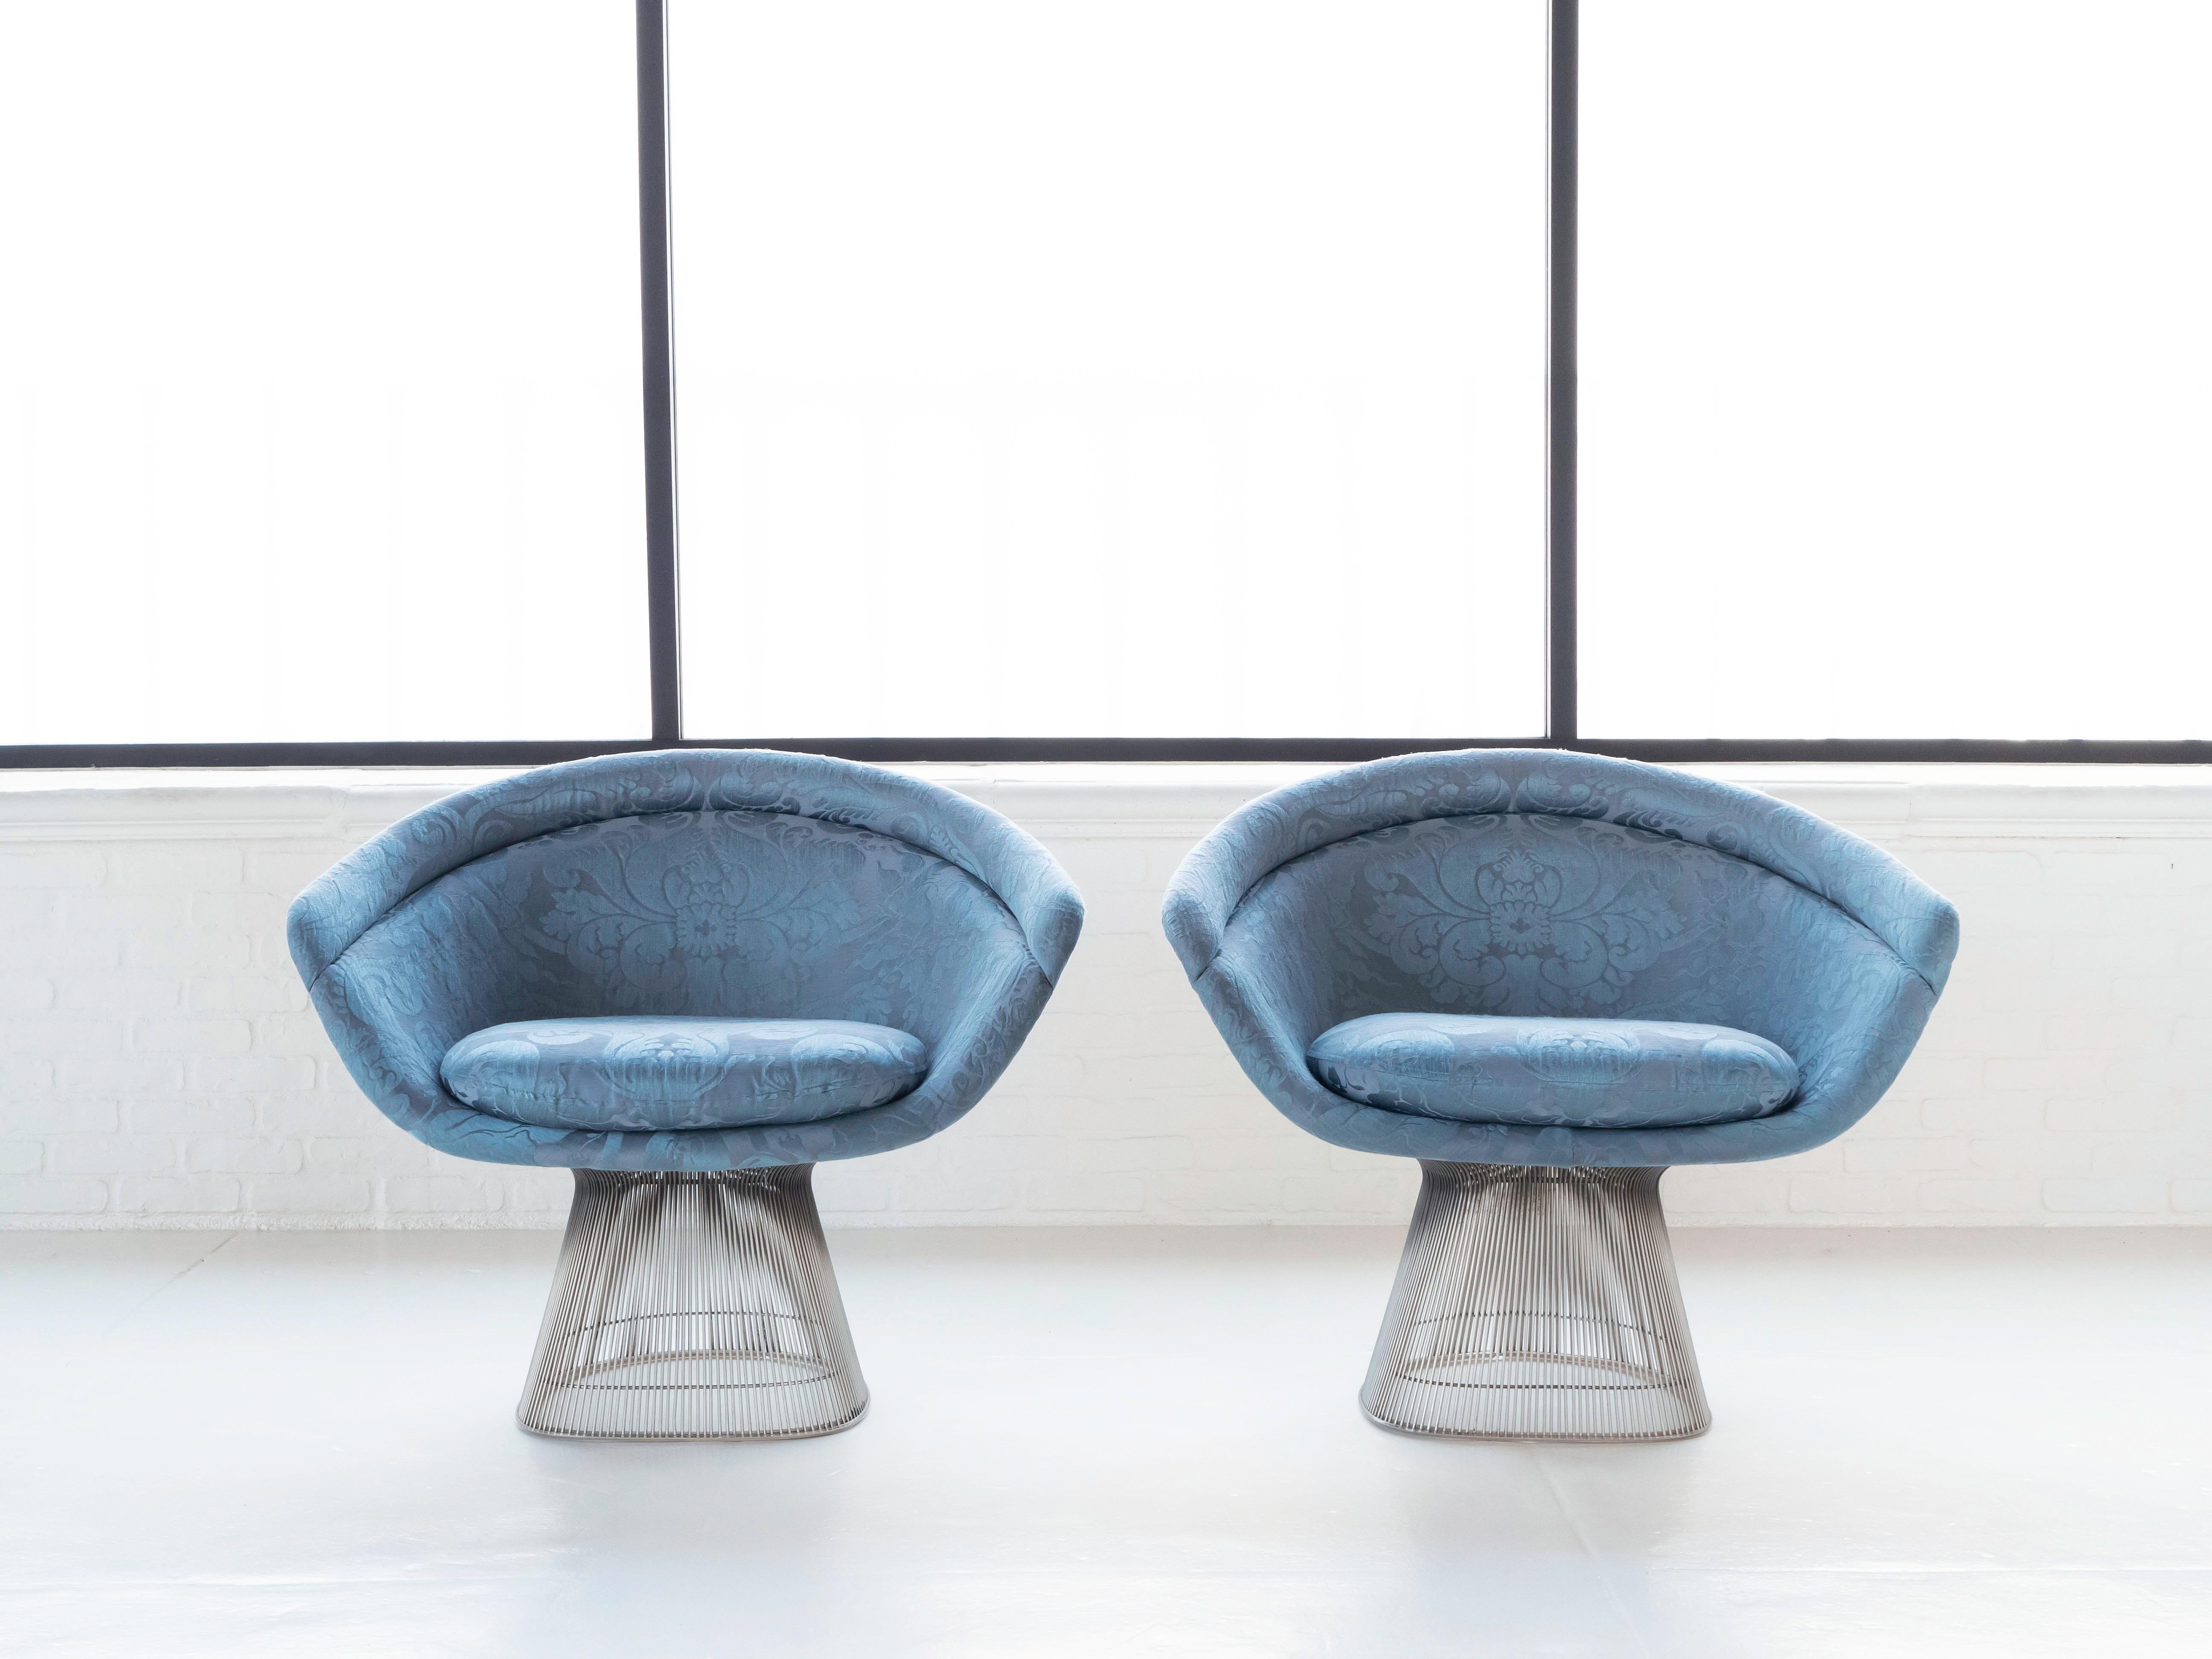 Warren Platner Modell Nr. 1715 Vernickeltes Drahtgestell Lounge Chairs entworfen für Knoll, 1960er/1970er Jahre

Diese ikonischen Stühle wurden irgendwann mit diesem blauen Blumenmuster neu gepolstert.  Der Stoff weist leichte